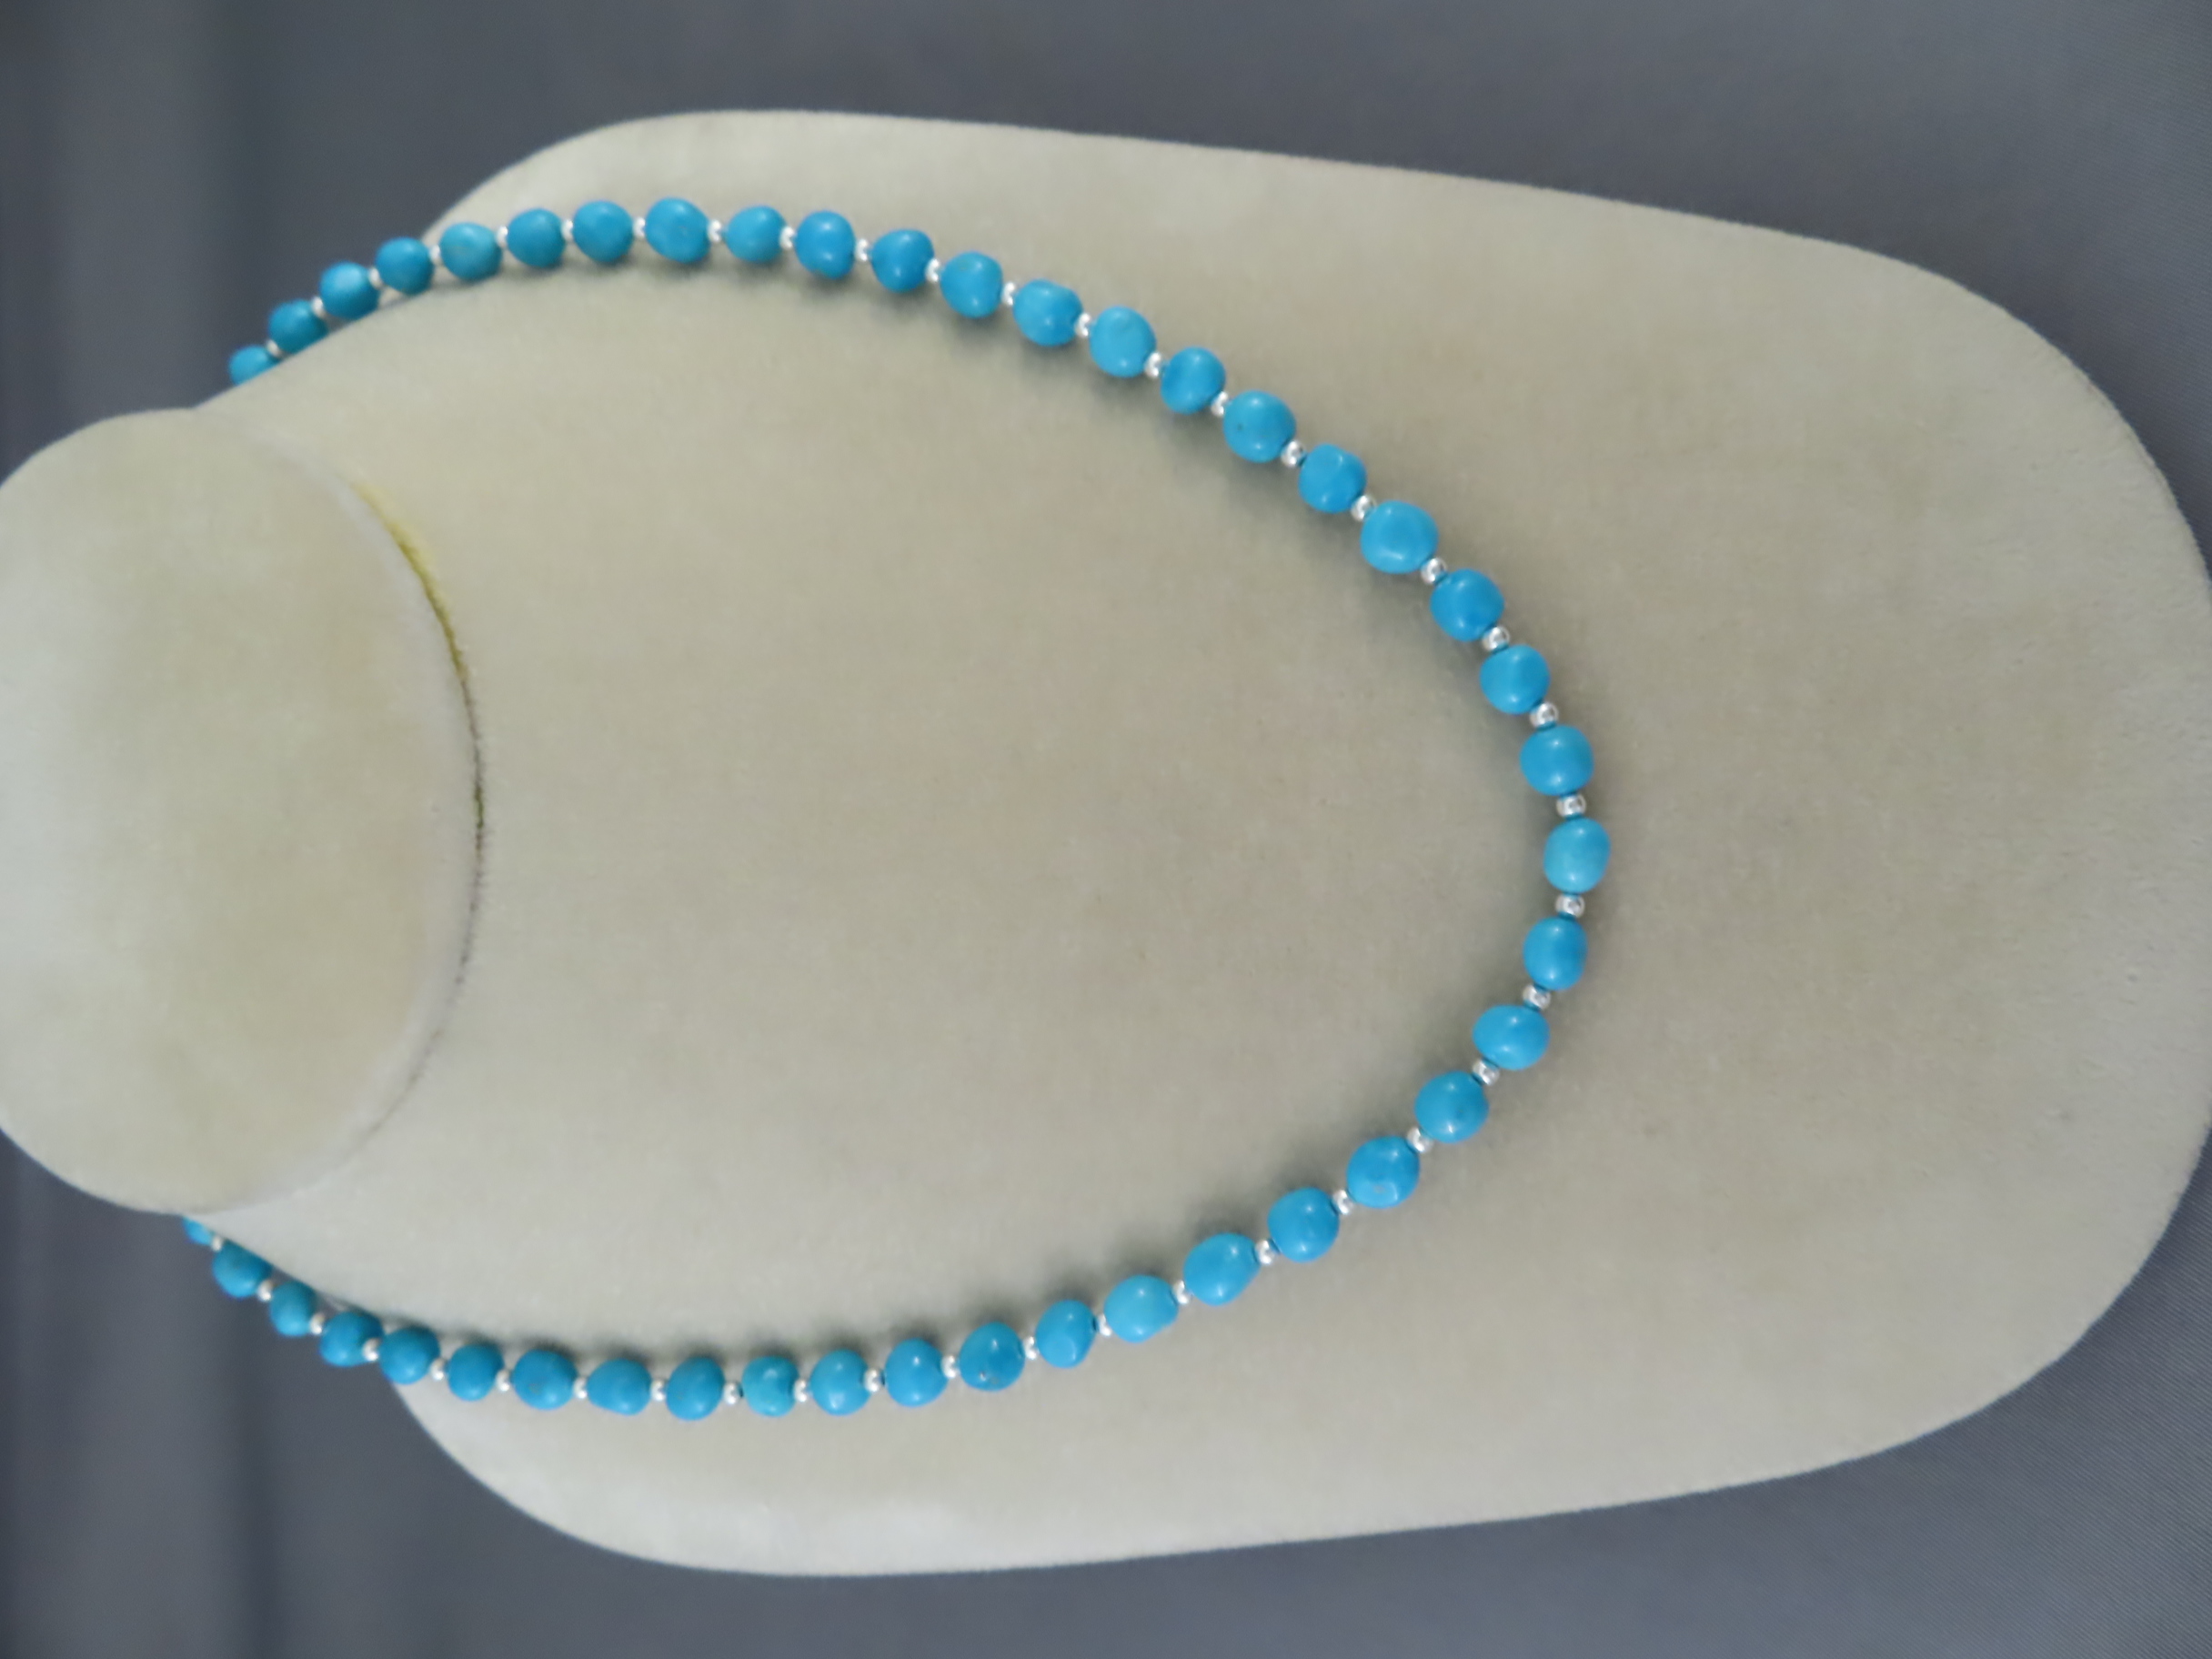 Shorter Sleeping Beauty Turquoise Necklace – Single Strand